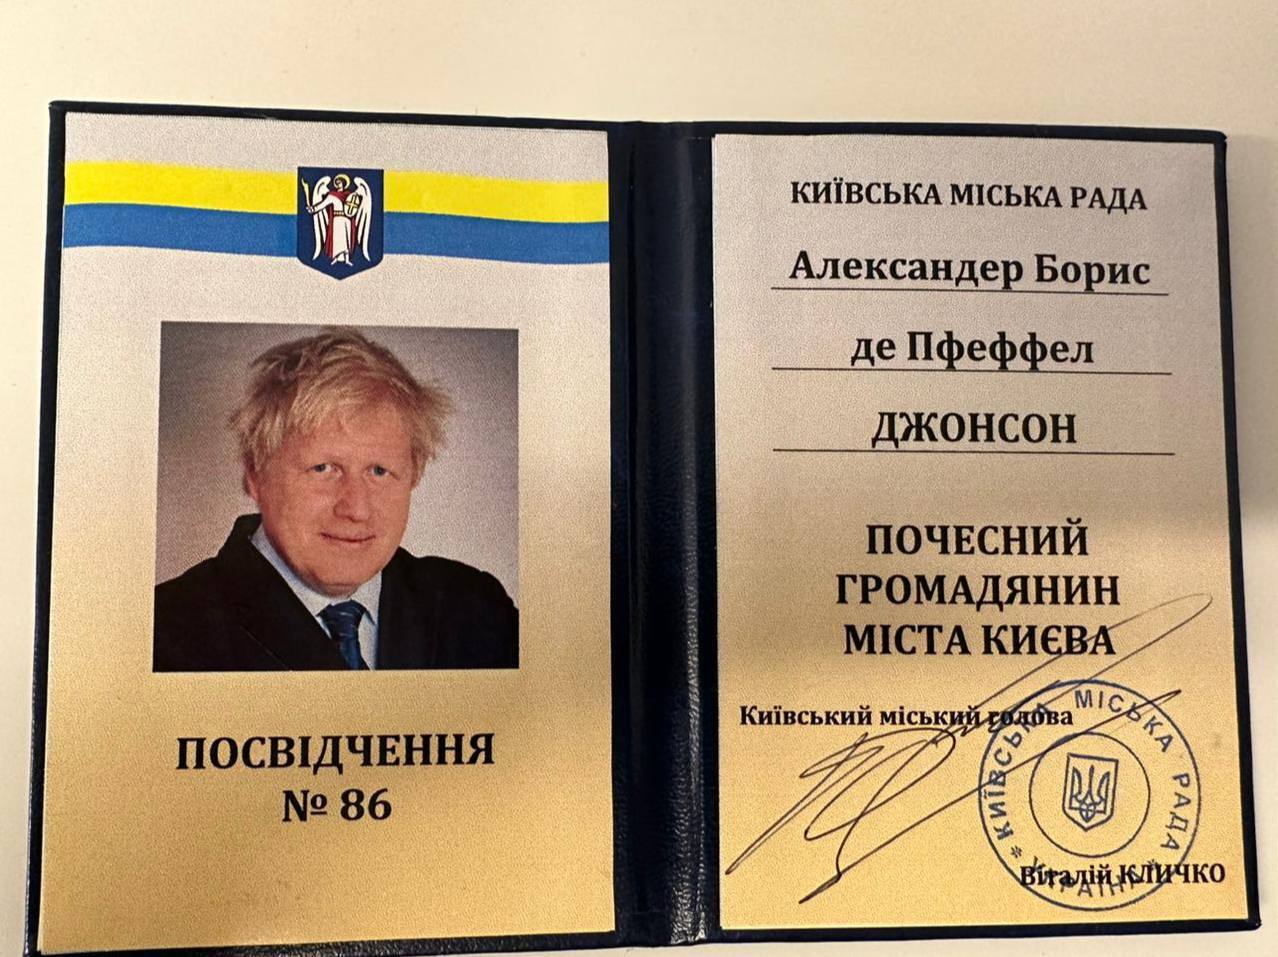 Кличко в Давосе вручил Борису Джонсону награду – звание Почетного гражданина Киева. Видео